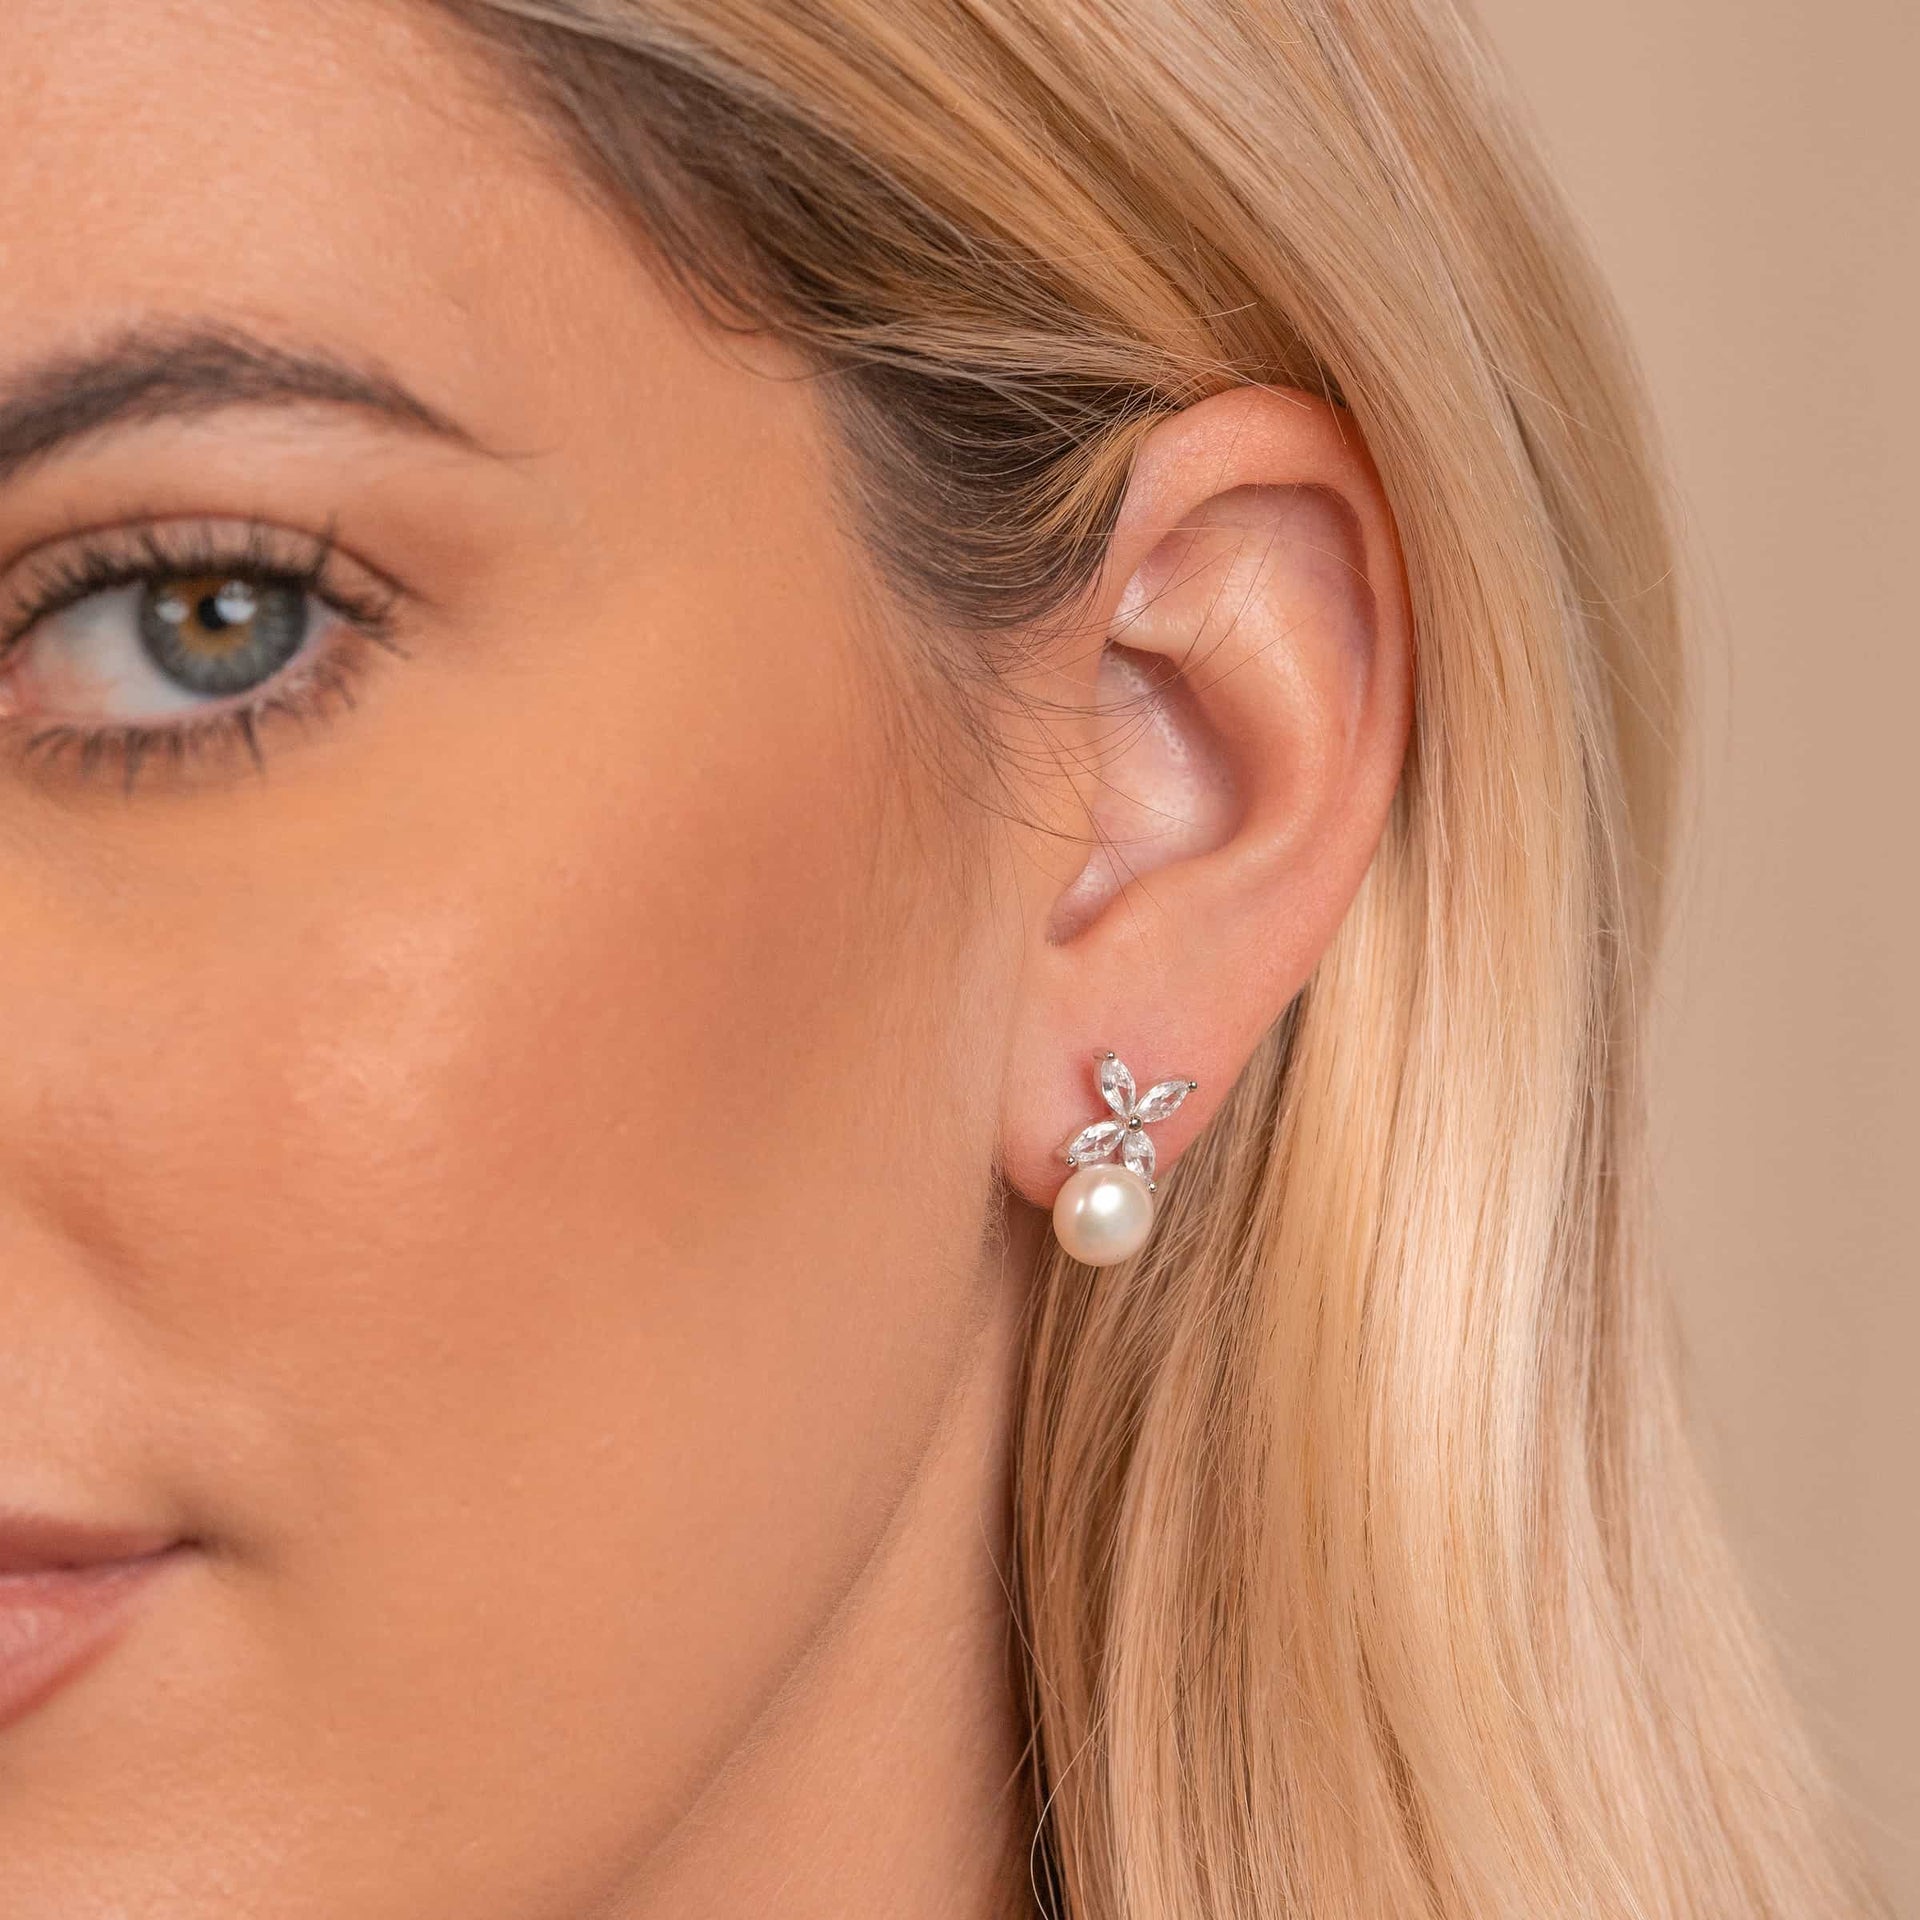 Woman wearing silver pearl earrings